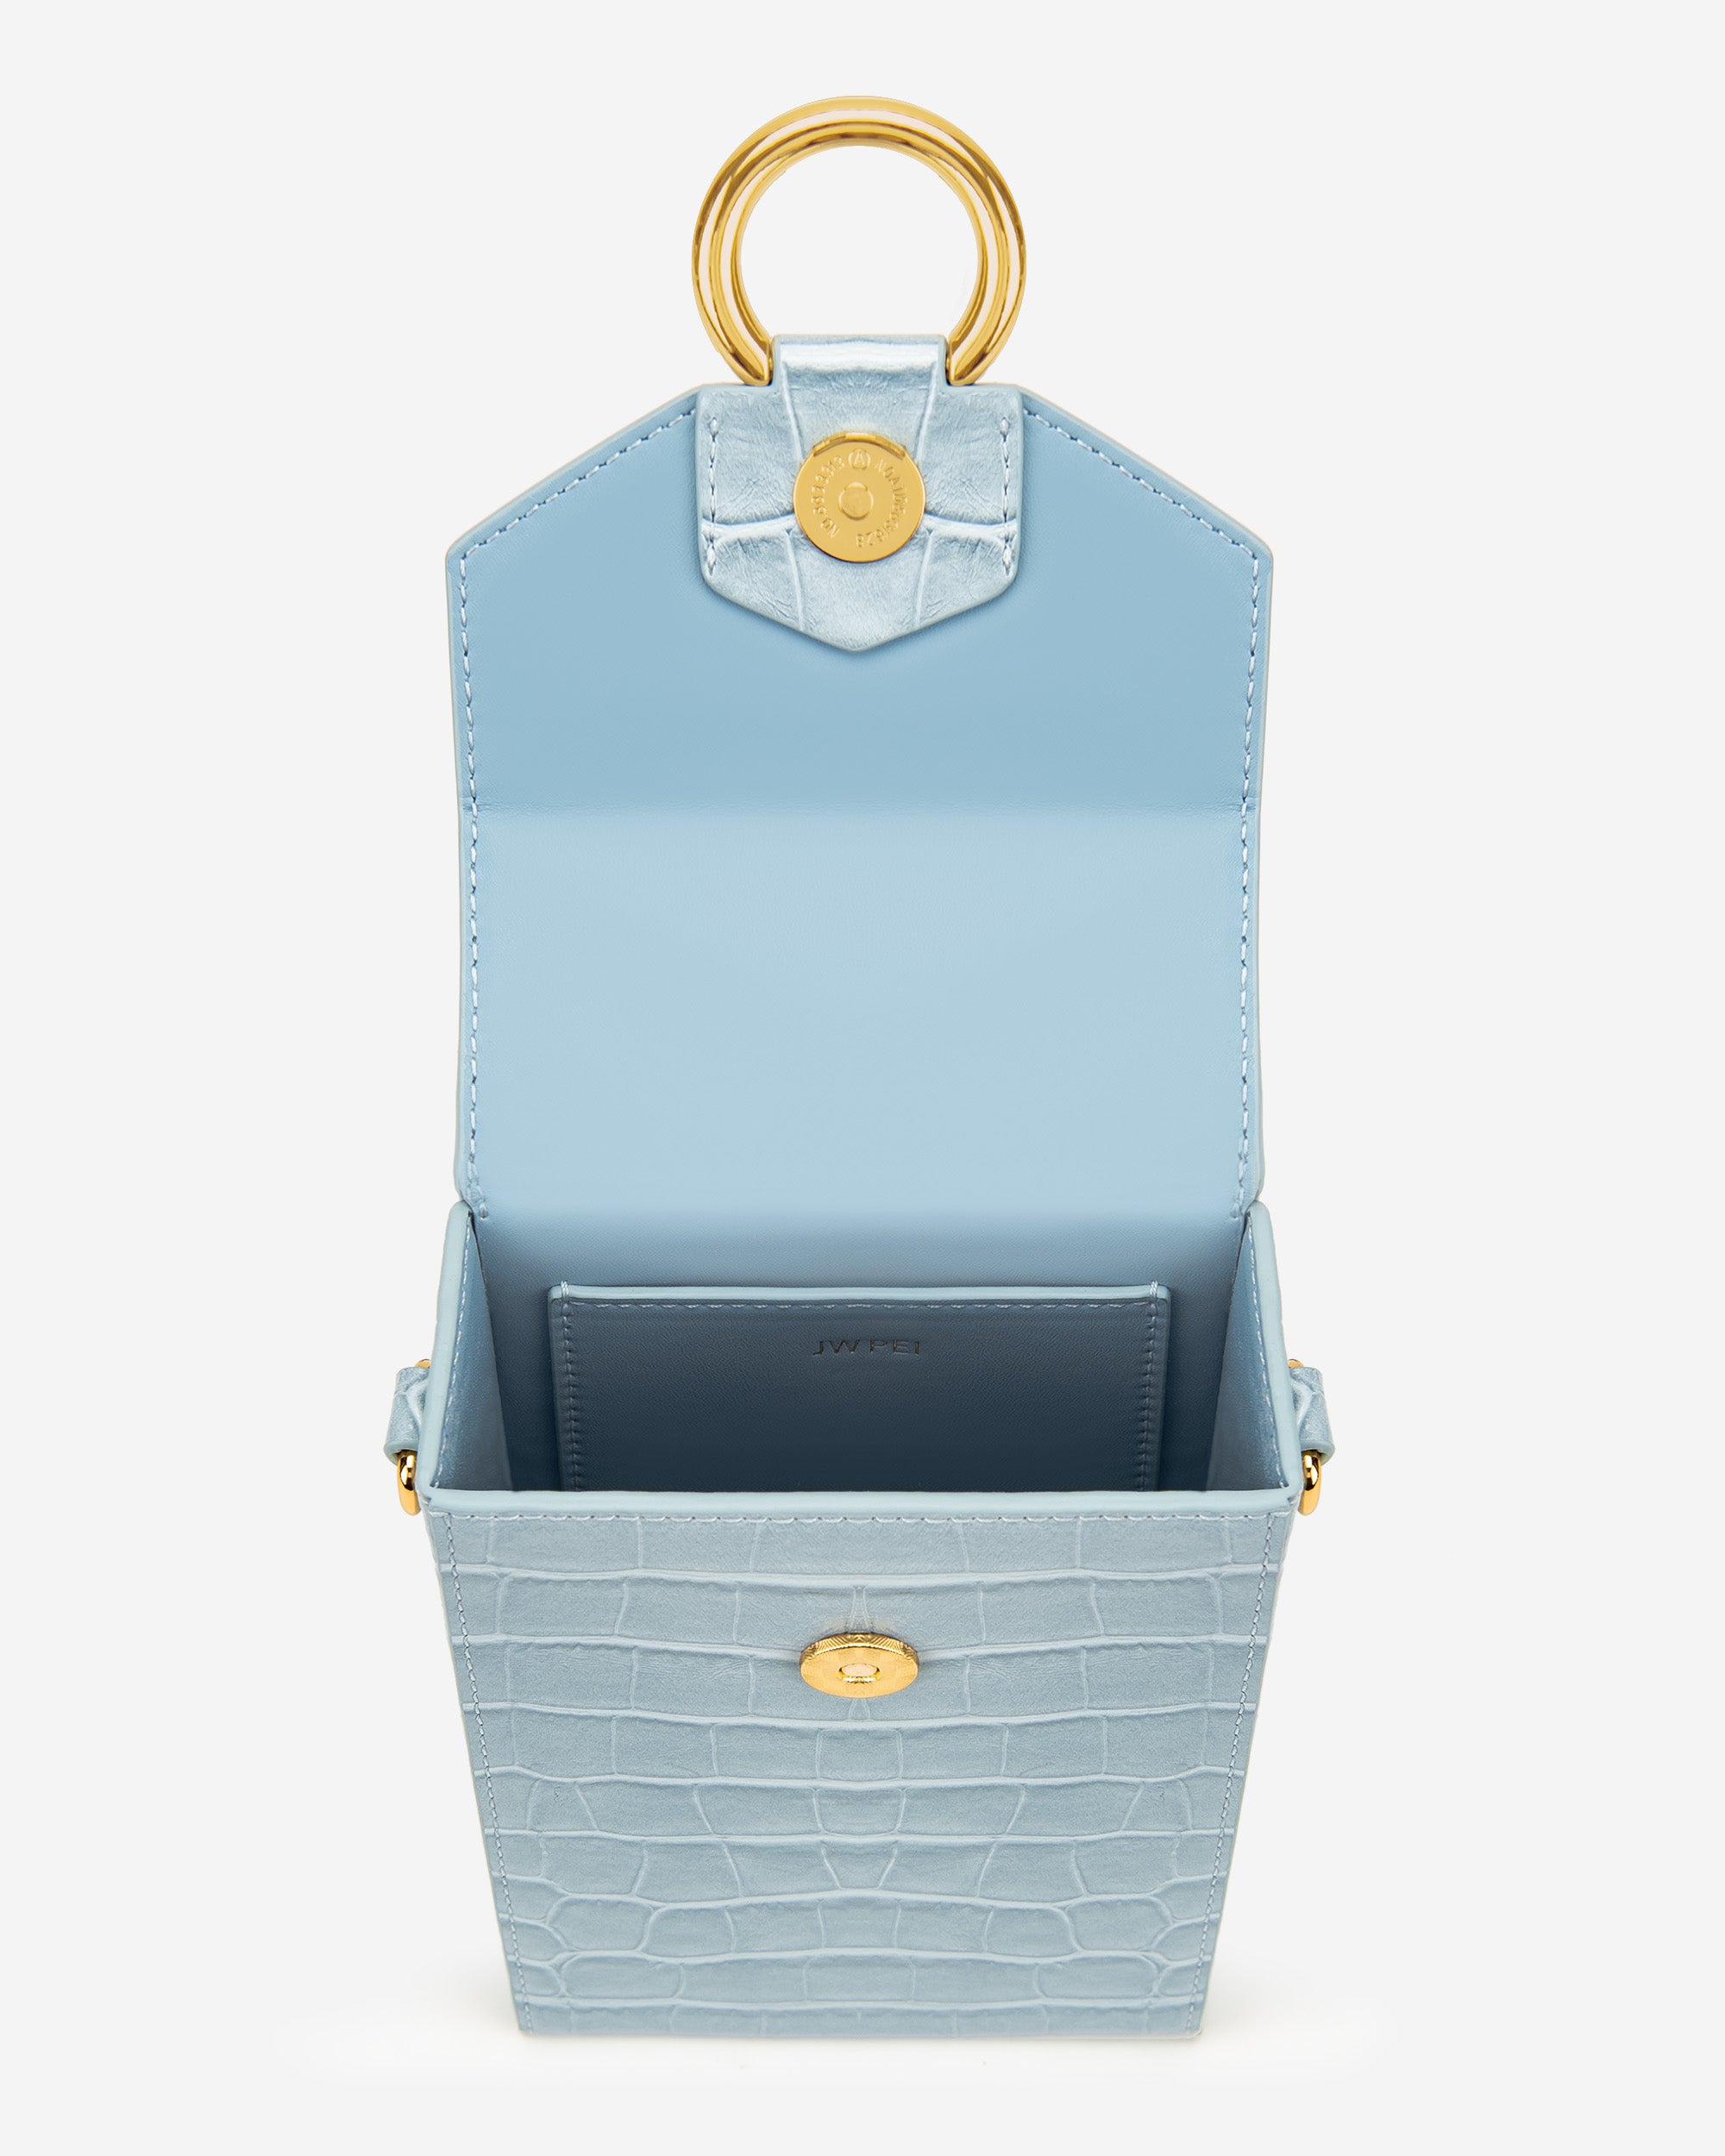 lola 체인 핸드폰 가방 - 아이스 블루 악어 무늬